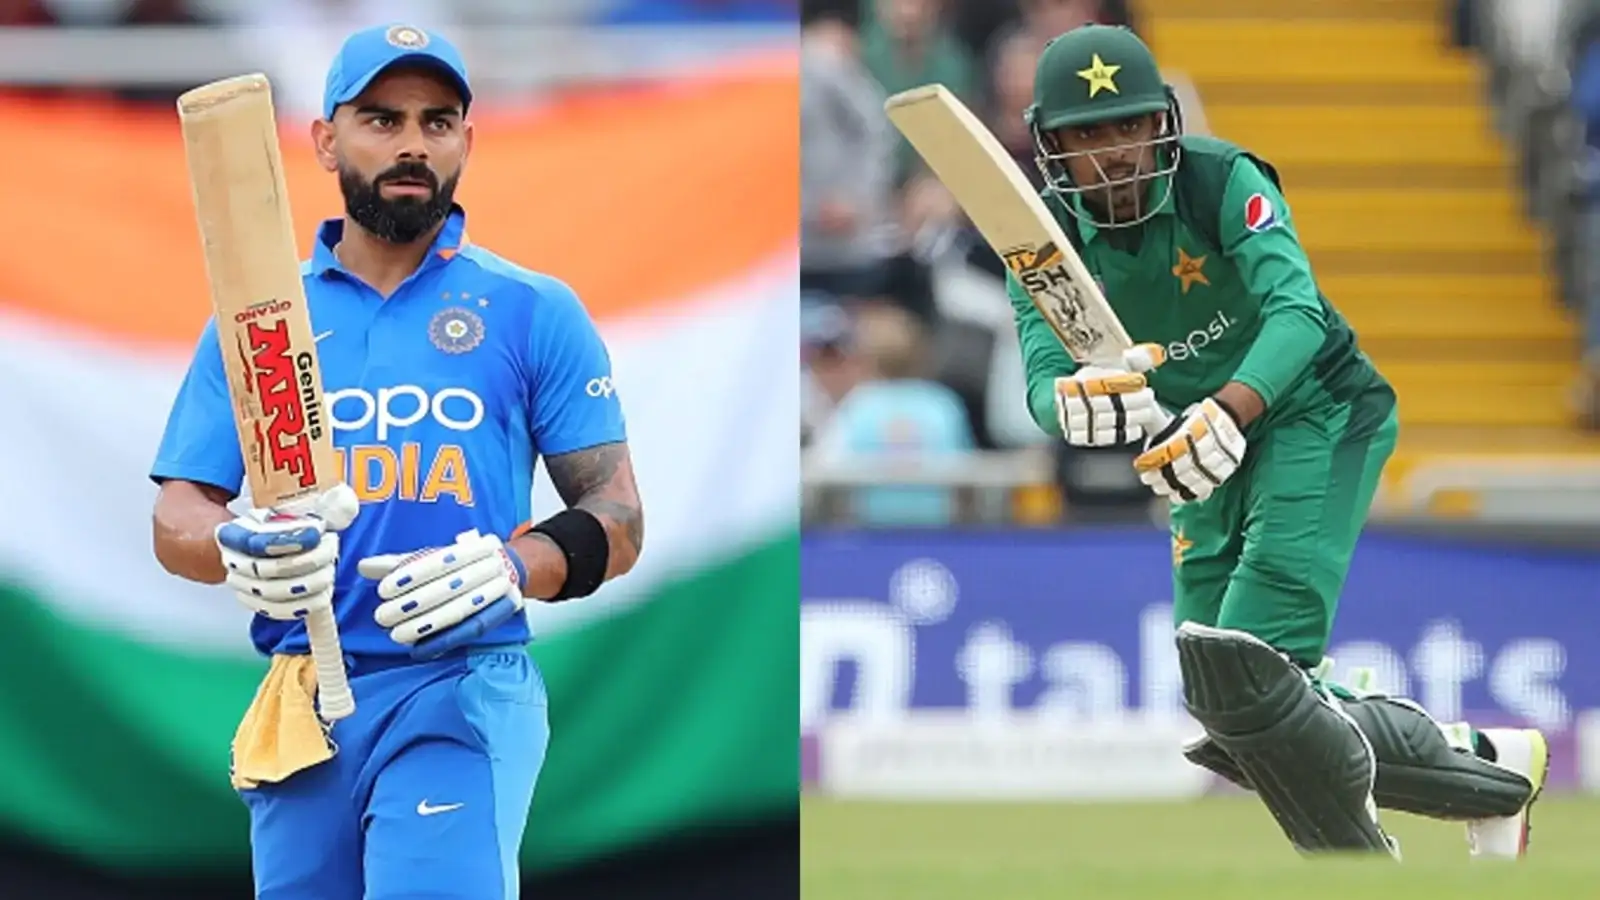 T20 World Cup: हारे तो पाकिस्तान मत लौटना, IND-PAK मैच से पहले बाबर आजम को मिली धमकी